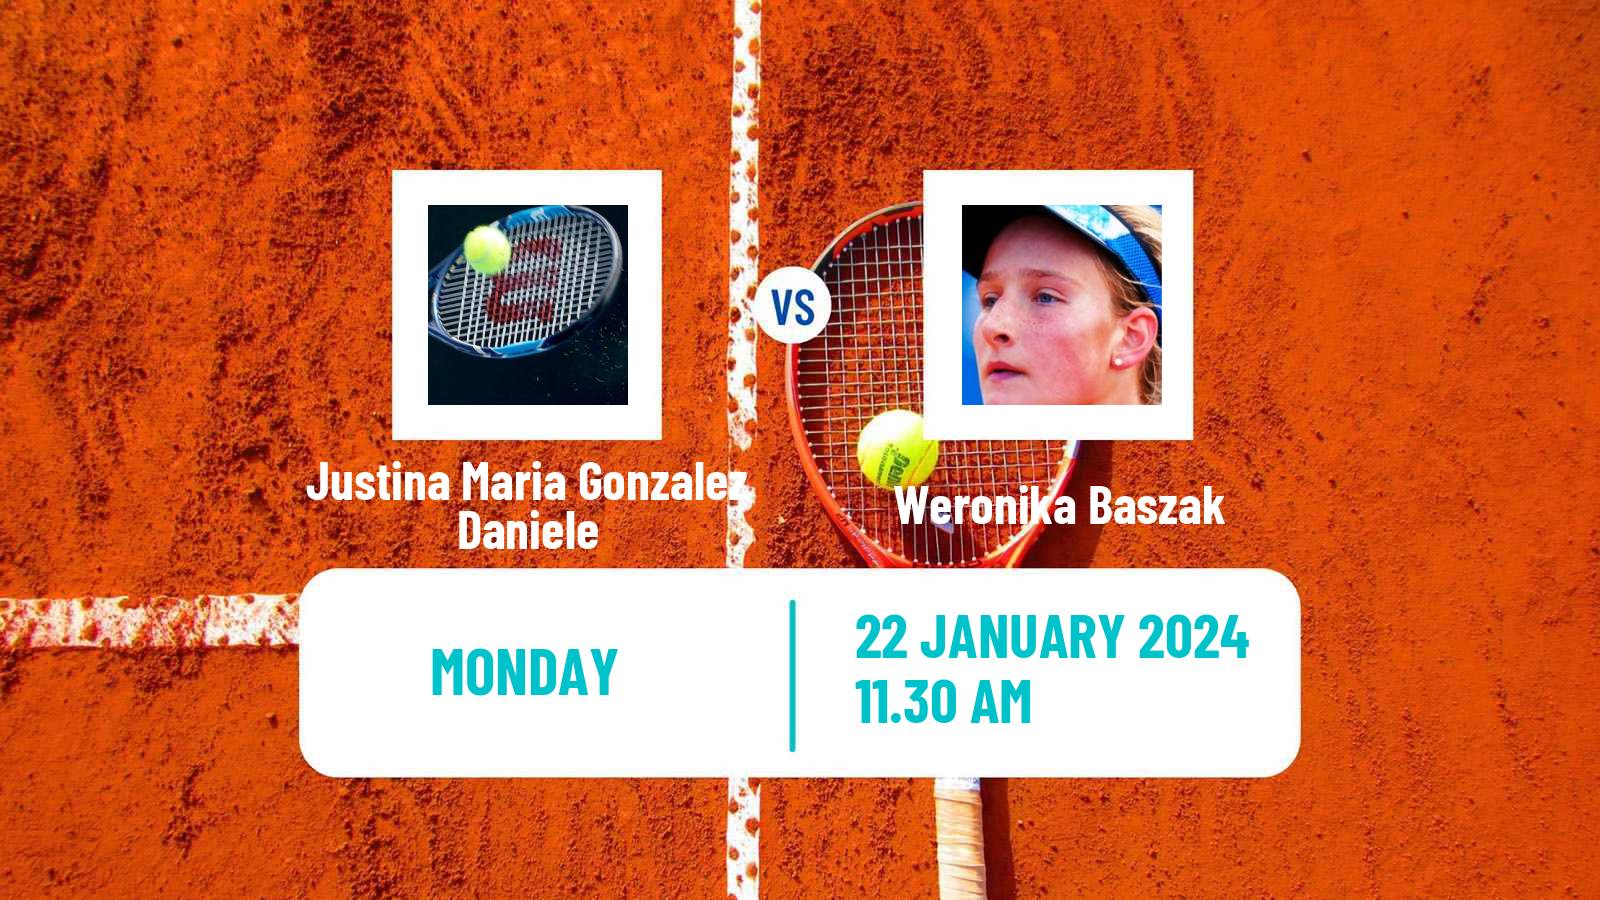 Tennis ITF W35 Buenos Aires 2 Women Justina Maria Gonzalez Daniele - Weronika Baszak